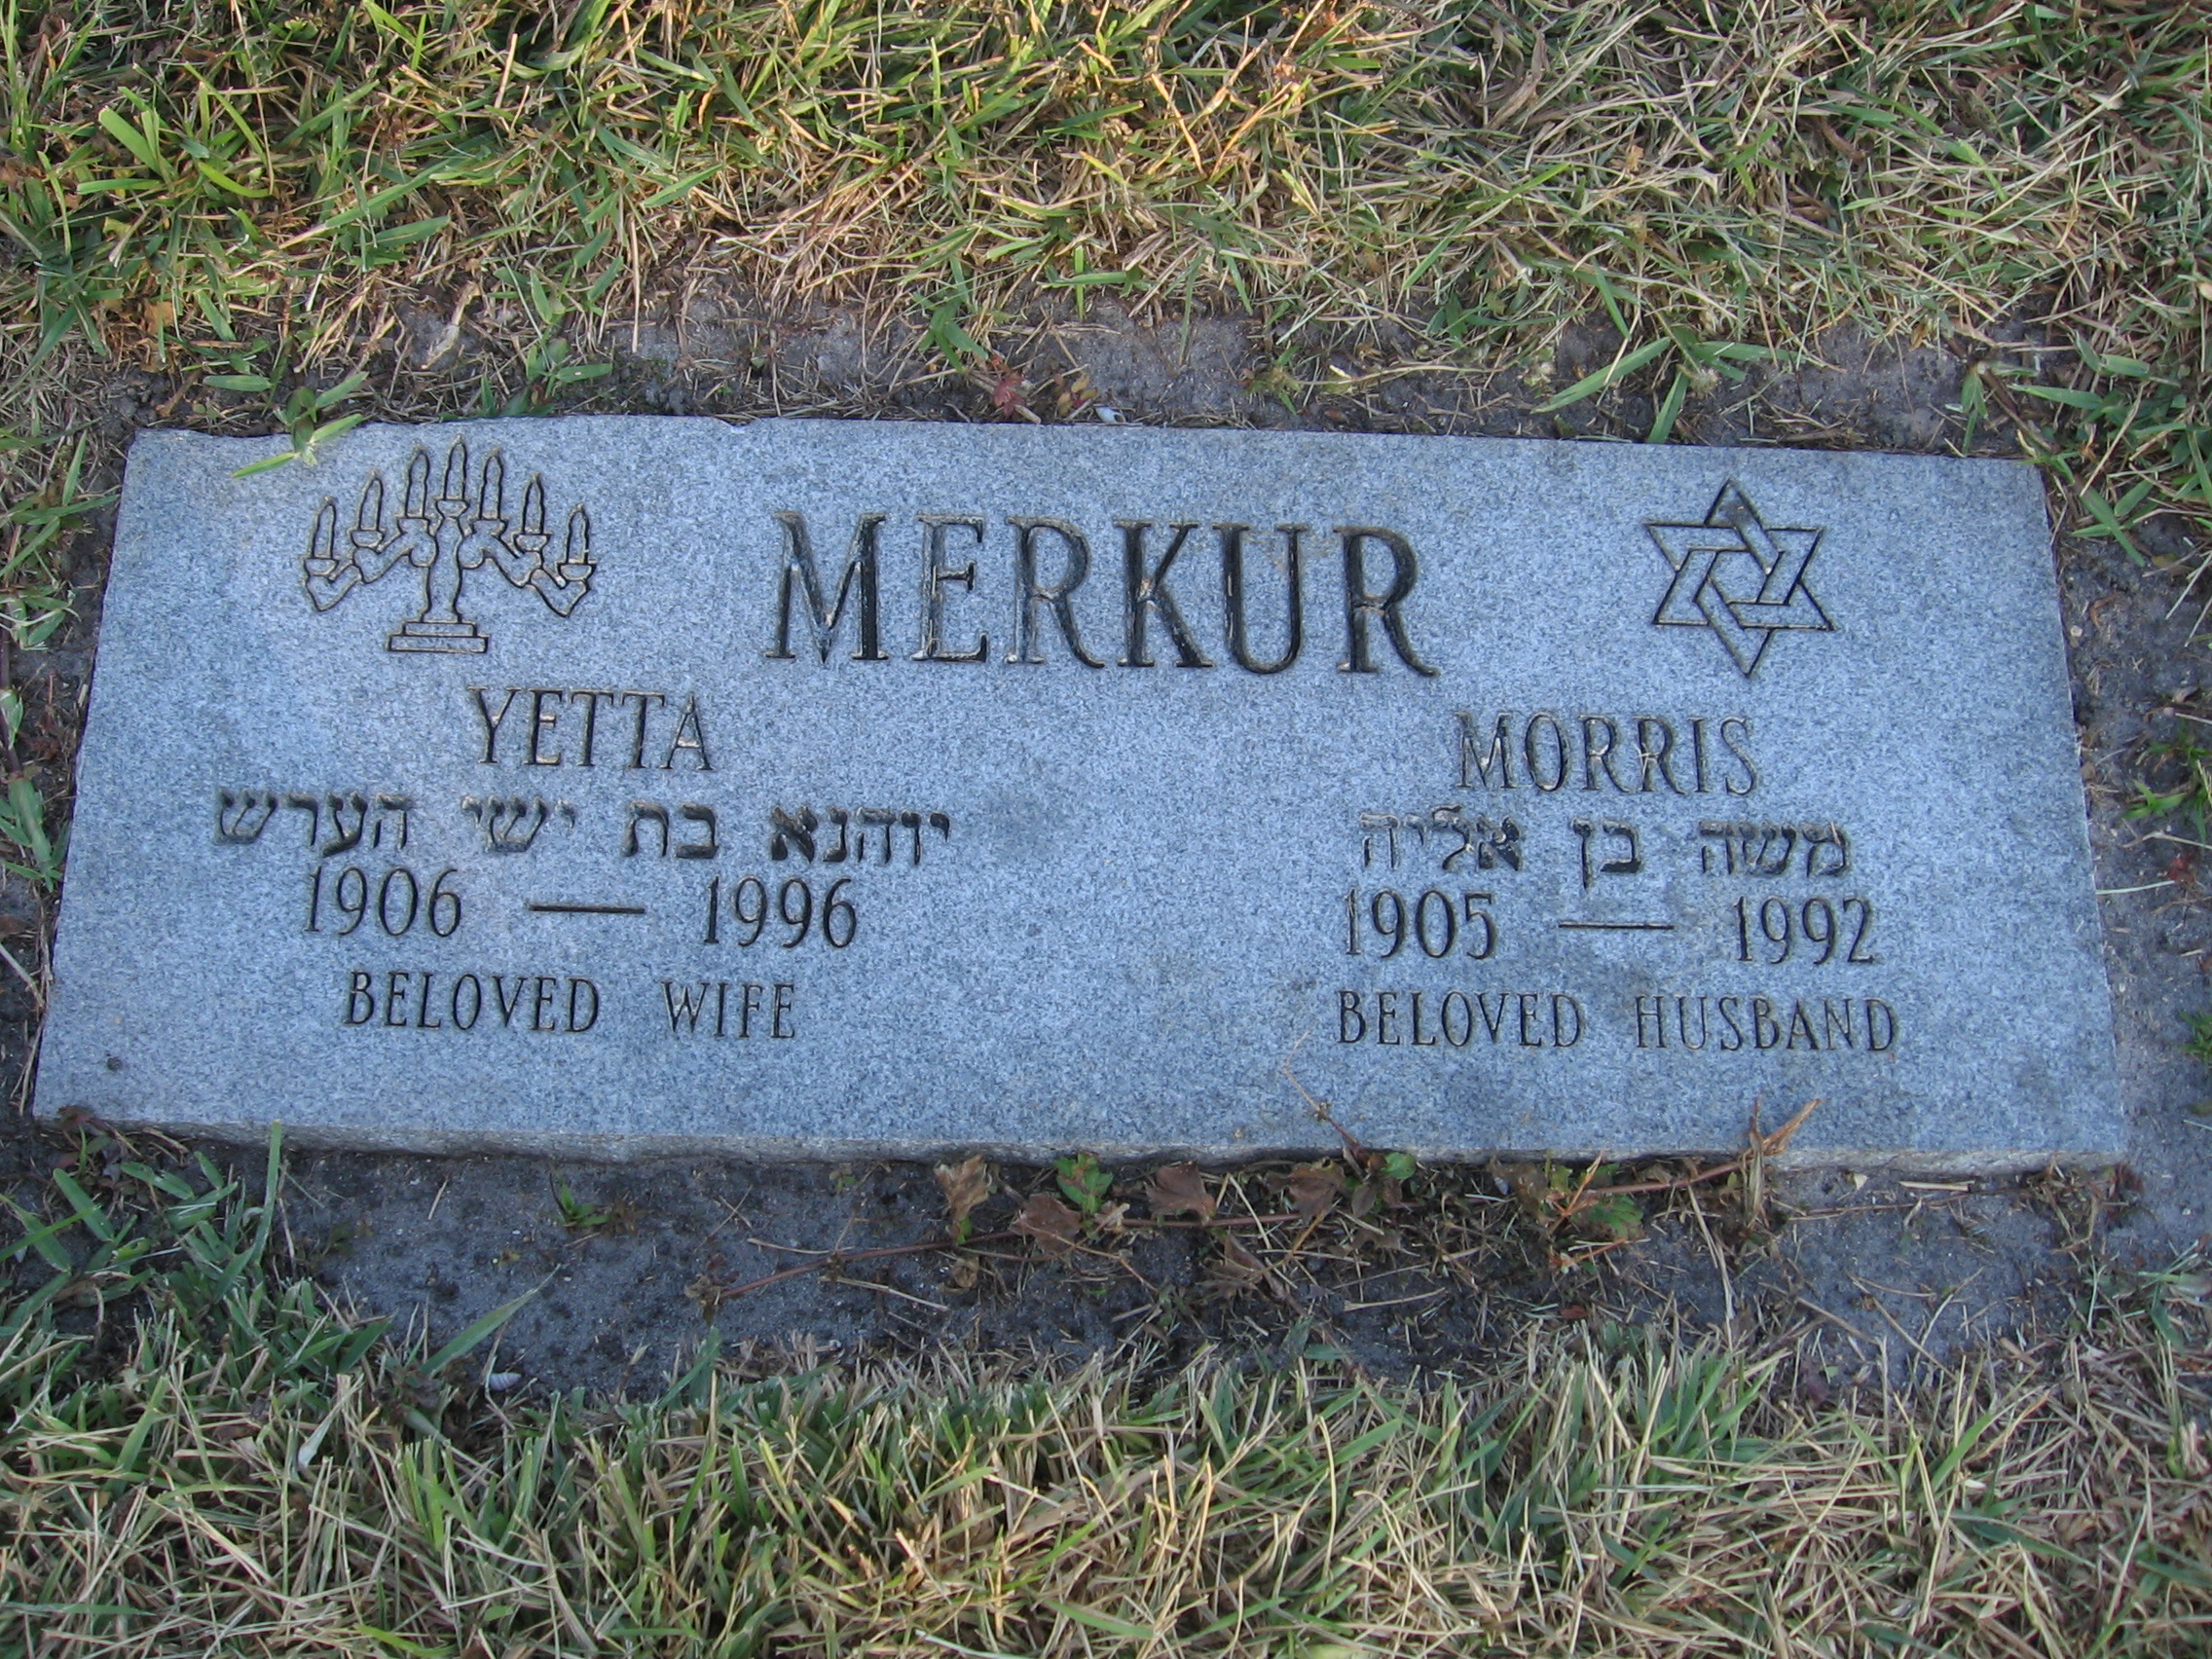 Morris Merkur